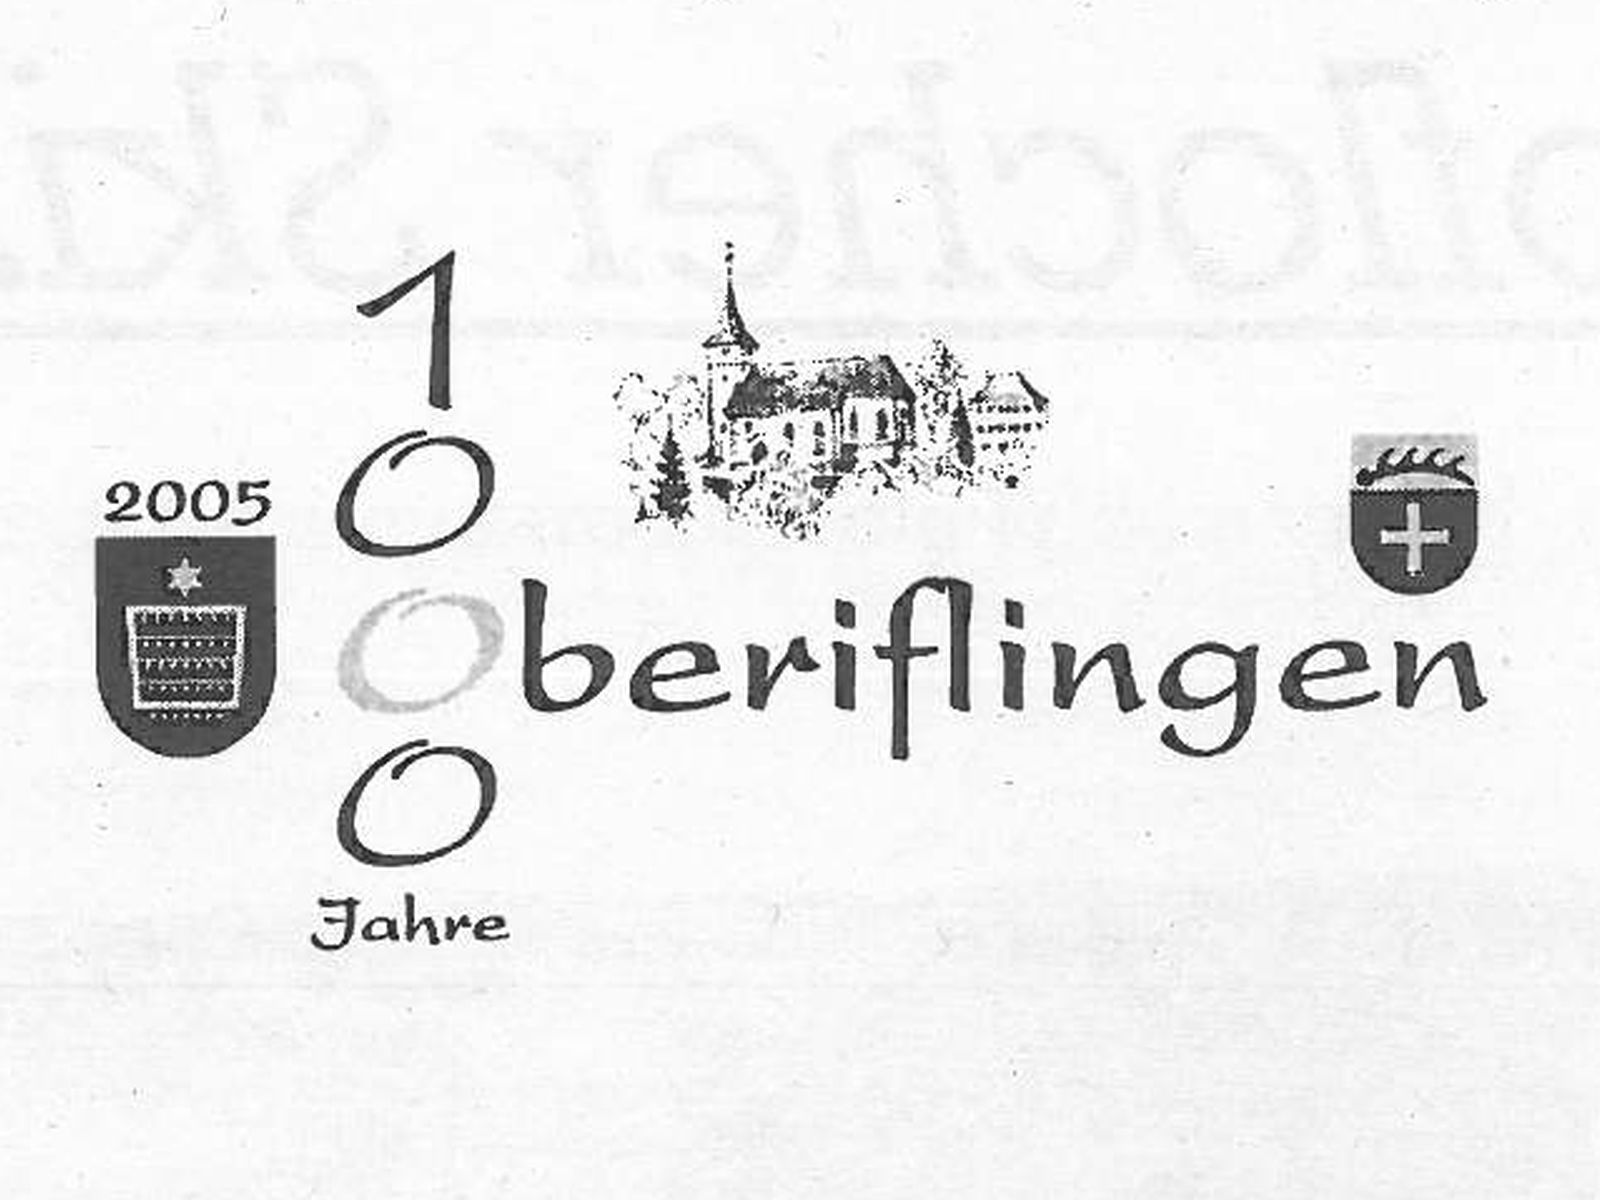  Schopflocher Skizzen Logo der 1000 Jahr Feier Oberiflingen - Bild wird mit einem klick vergrößert 